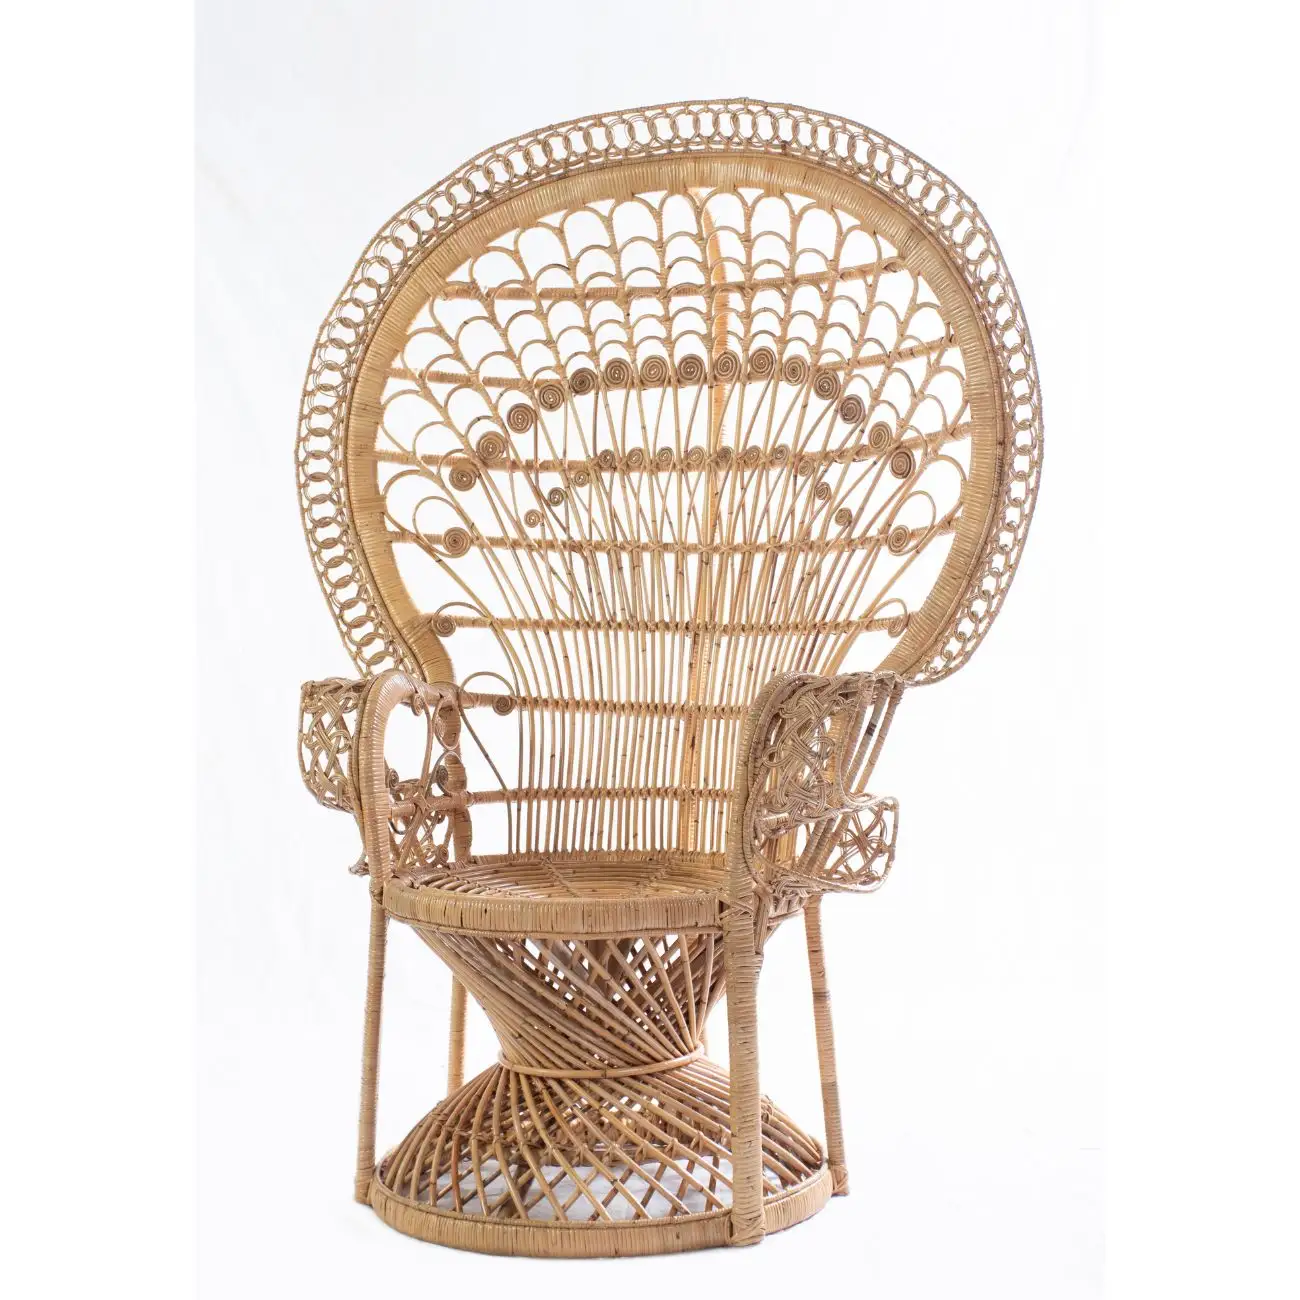 كرسي حديقة دائري بتصميم ملكي مزخرف, كرسي فندق ، مصنوع من إطار من خشب الراتان ونسيج أساسي من الخيزران ، تصميم فخم وأنيق